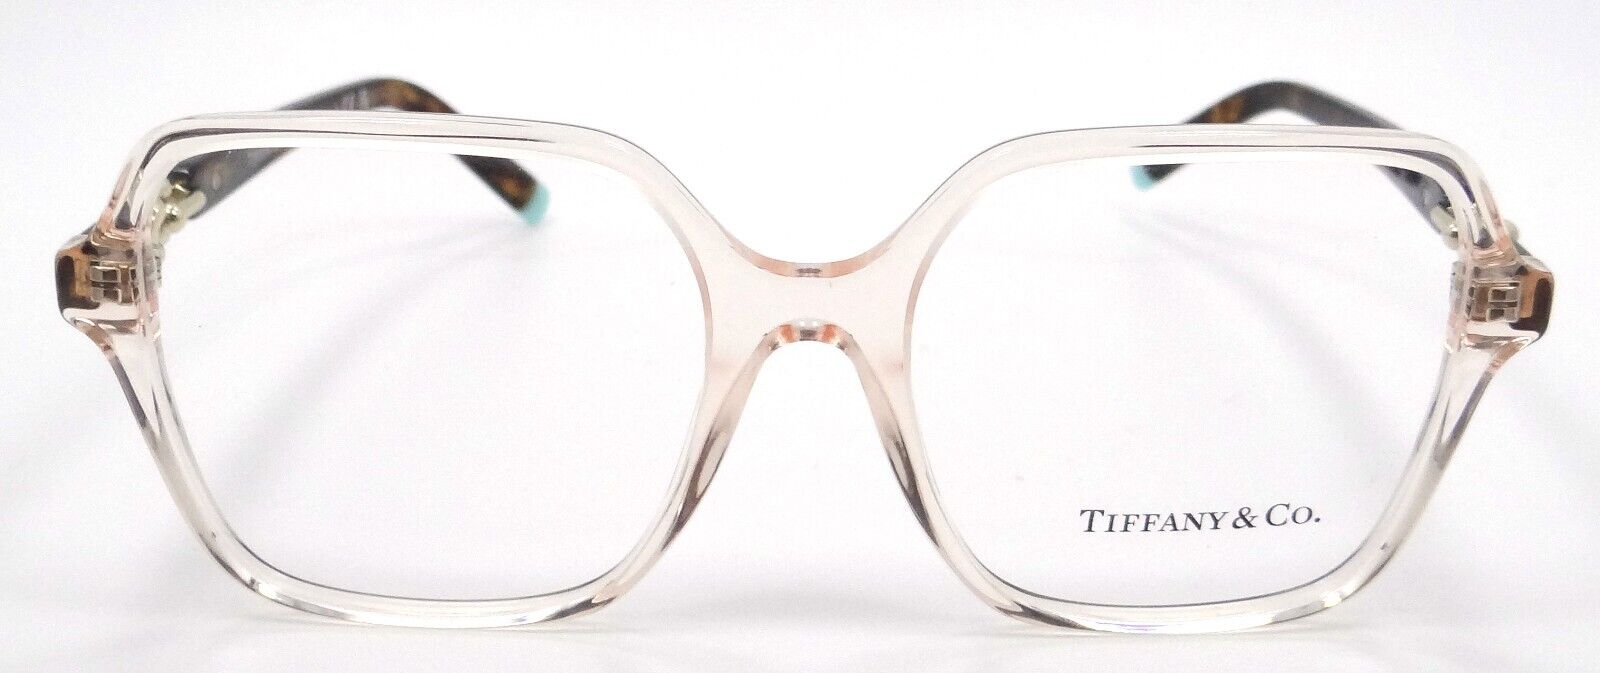 Tiffany & Co Eyeglasses Frames TF 2230 8278 52-17-140 Crystal Nude Italy-8056597751636-classypw.com-1